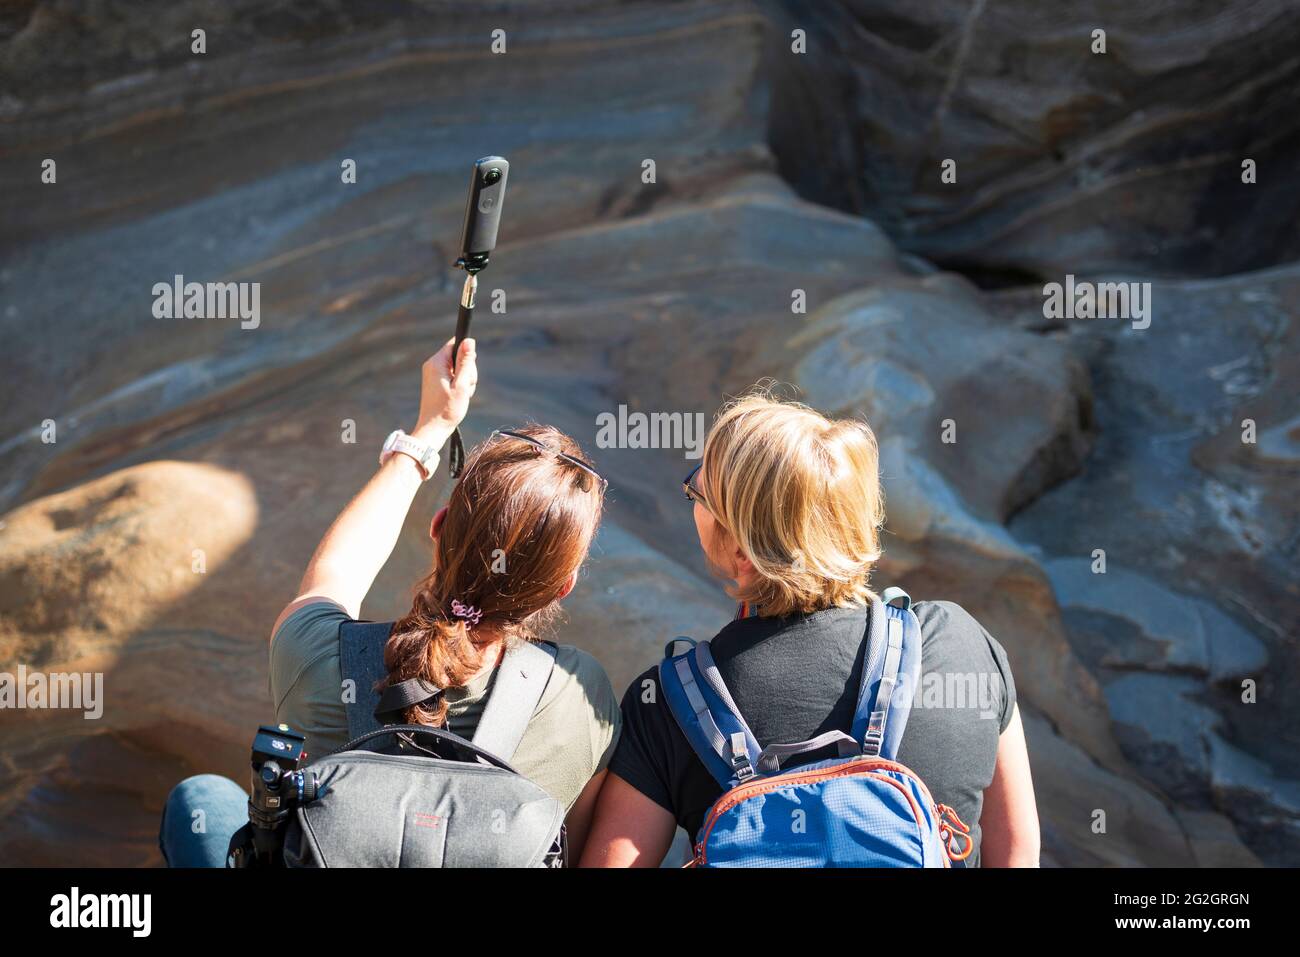 Impressions de Lastezzo dans la vallée de la Verzasca, district de Locarno, canton du Tessin en Suisse: Destination d'excursion populaire pour la randonnée, la plongée en rivière et la natation. Deux jeunes femmes prennent un selfie. Banque D'Images